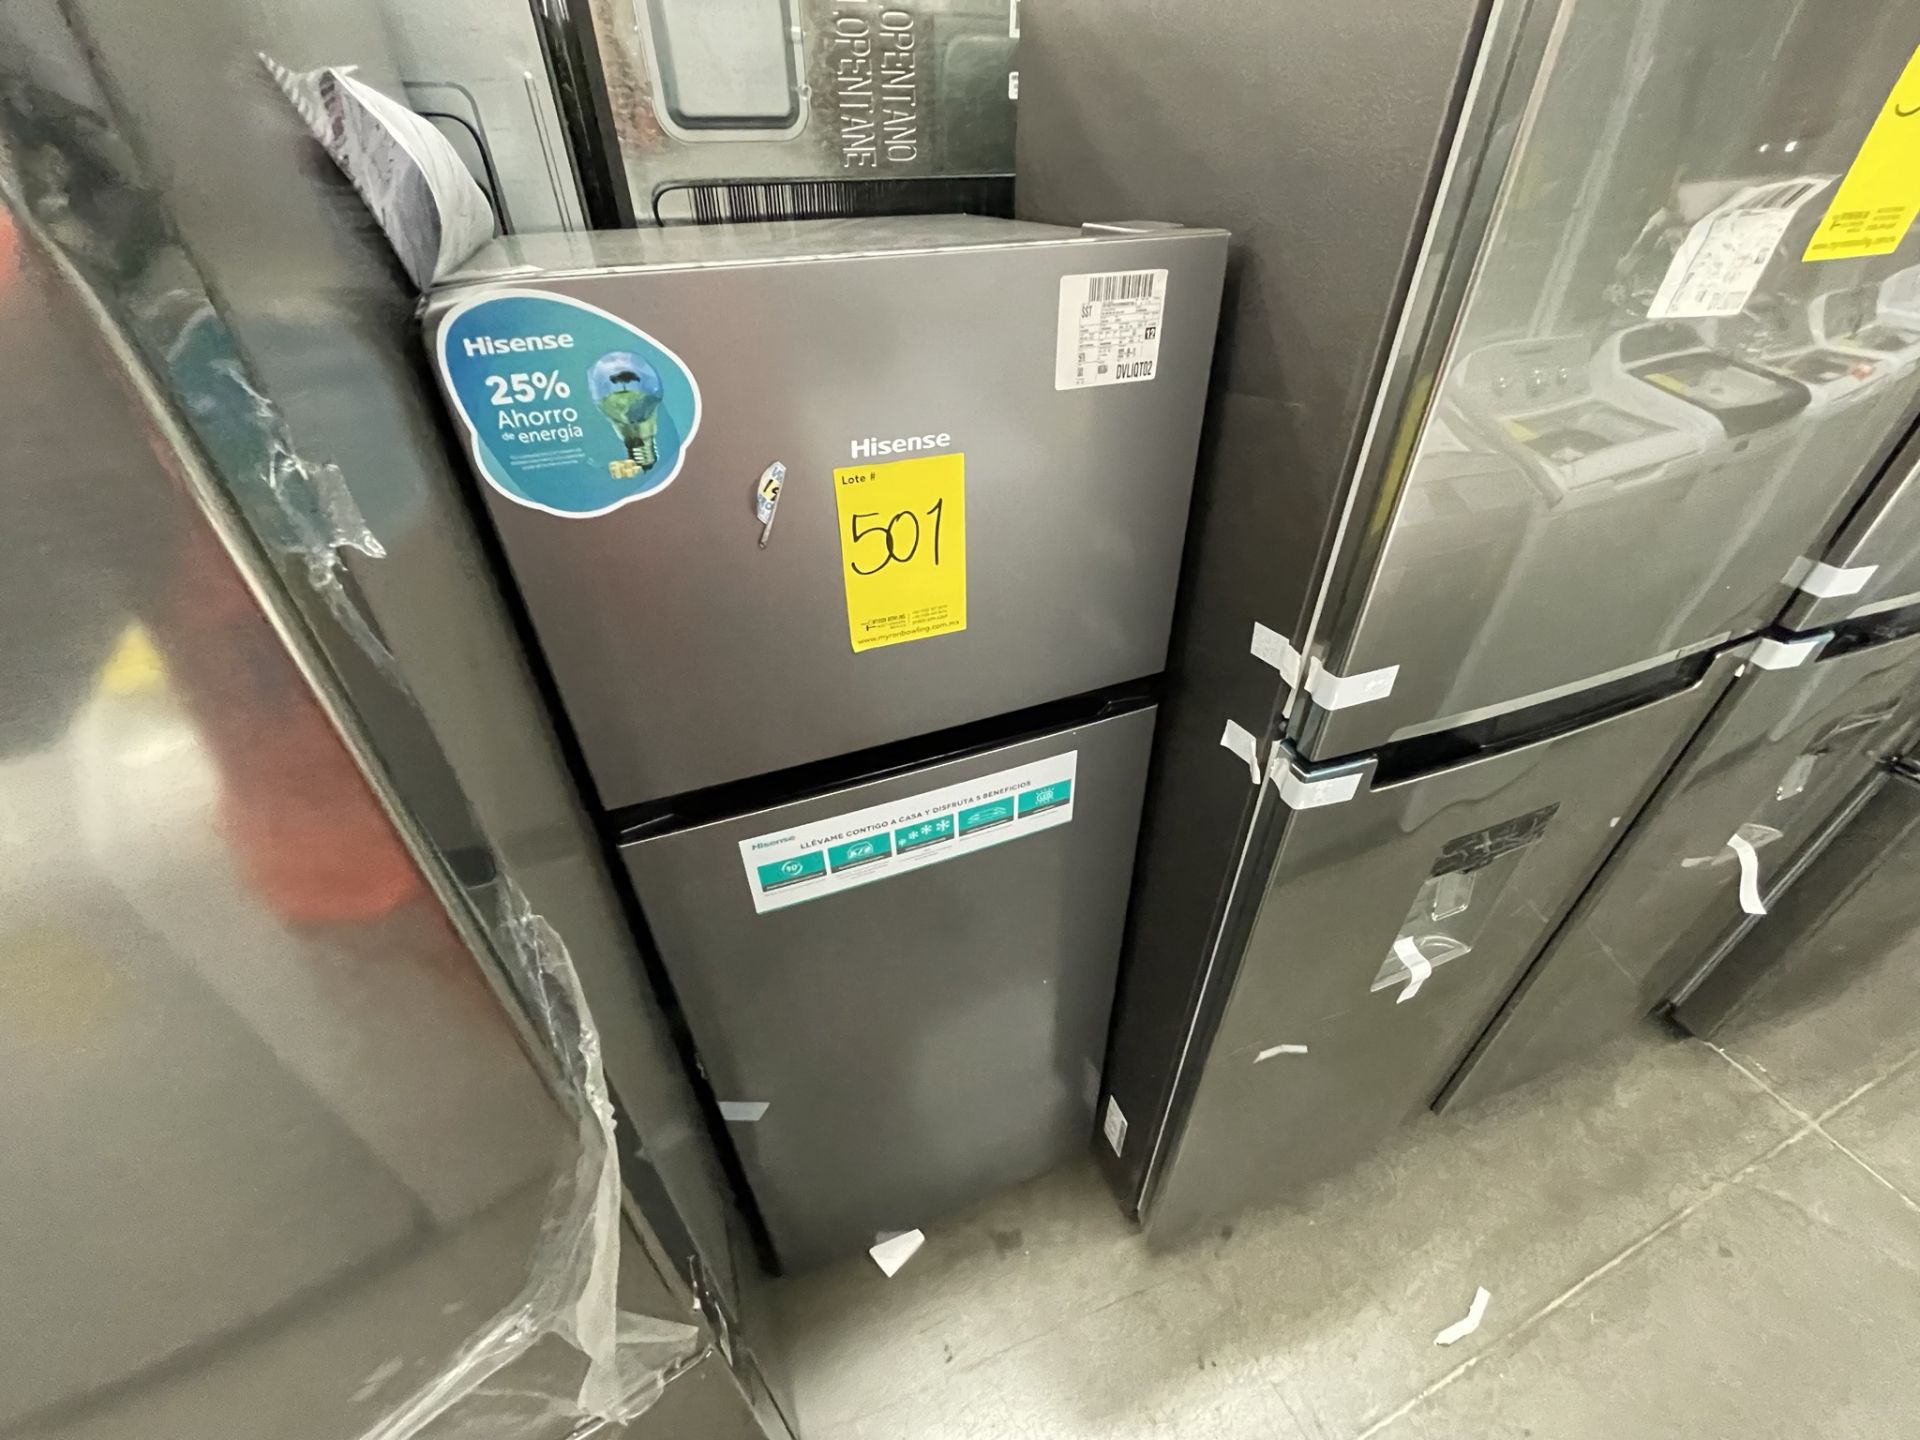 (EQUIPO NUEVO) Lote De 2 Refrigeradores Contiene: 1 Refrigerador Marca LG, Modelo GM29BP, Serie208M - Image 13 of 16